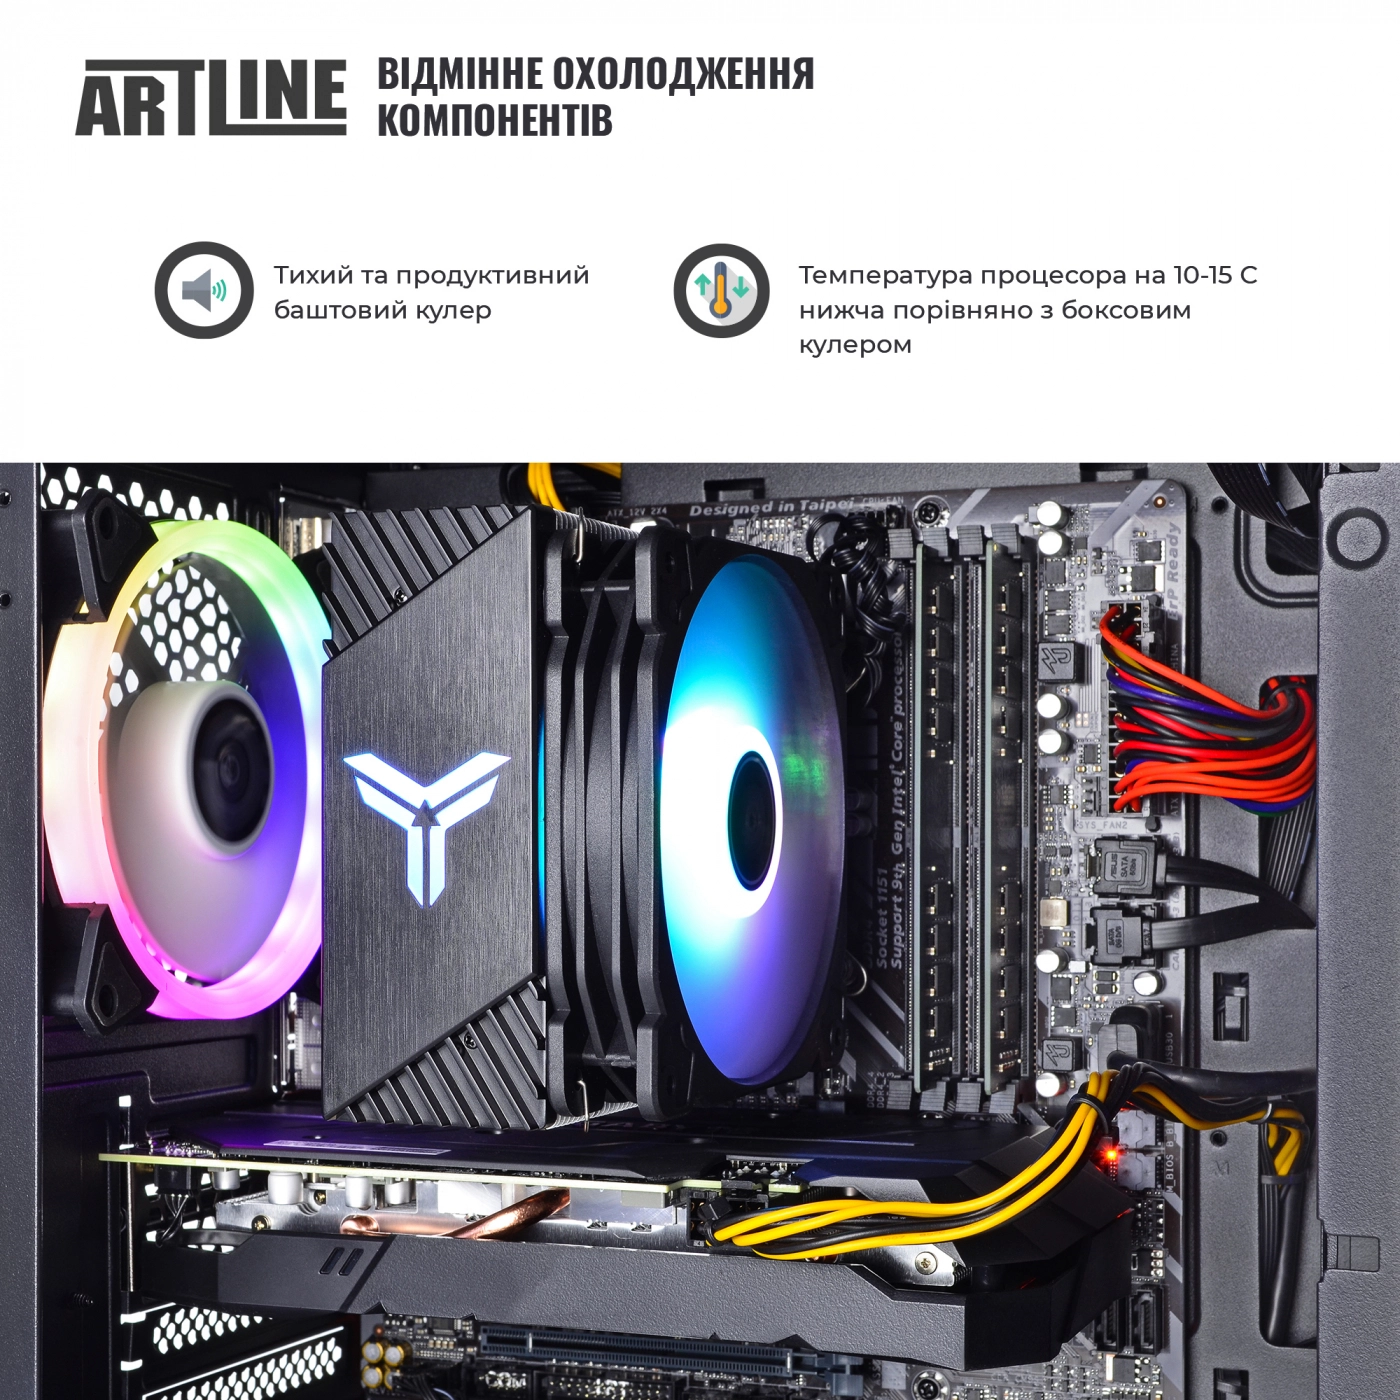 Купить Компьютер ARTLINE Gaming X71v42 - фото 4